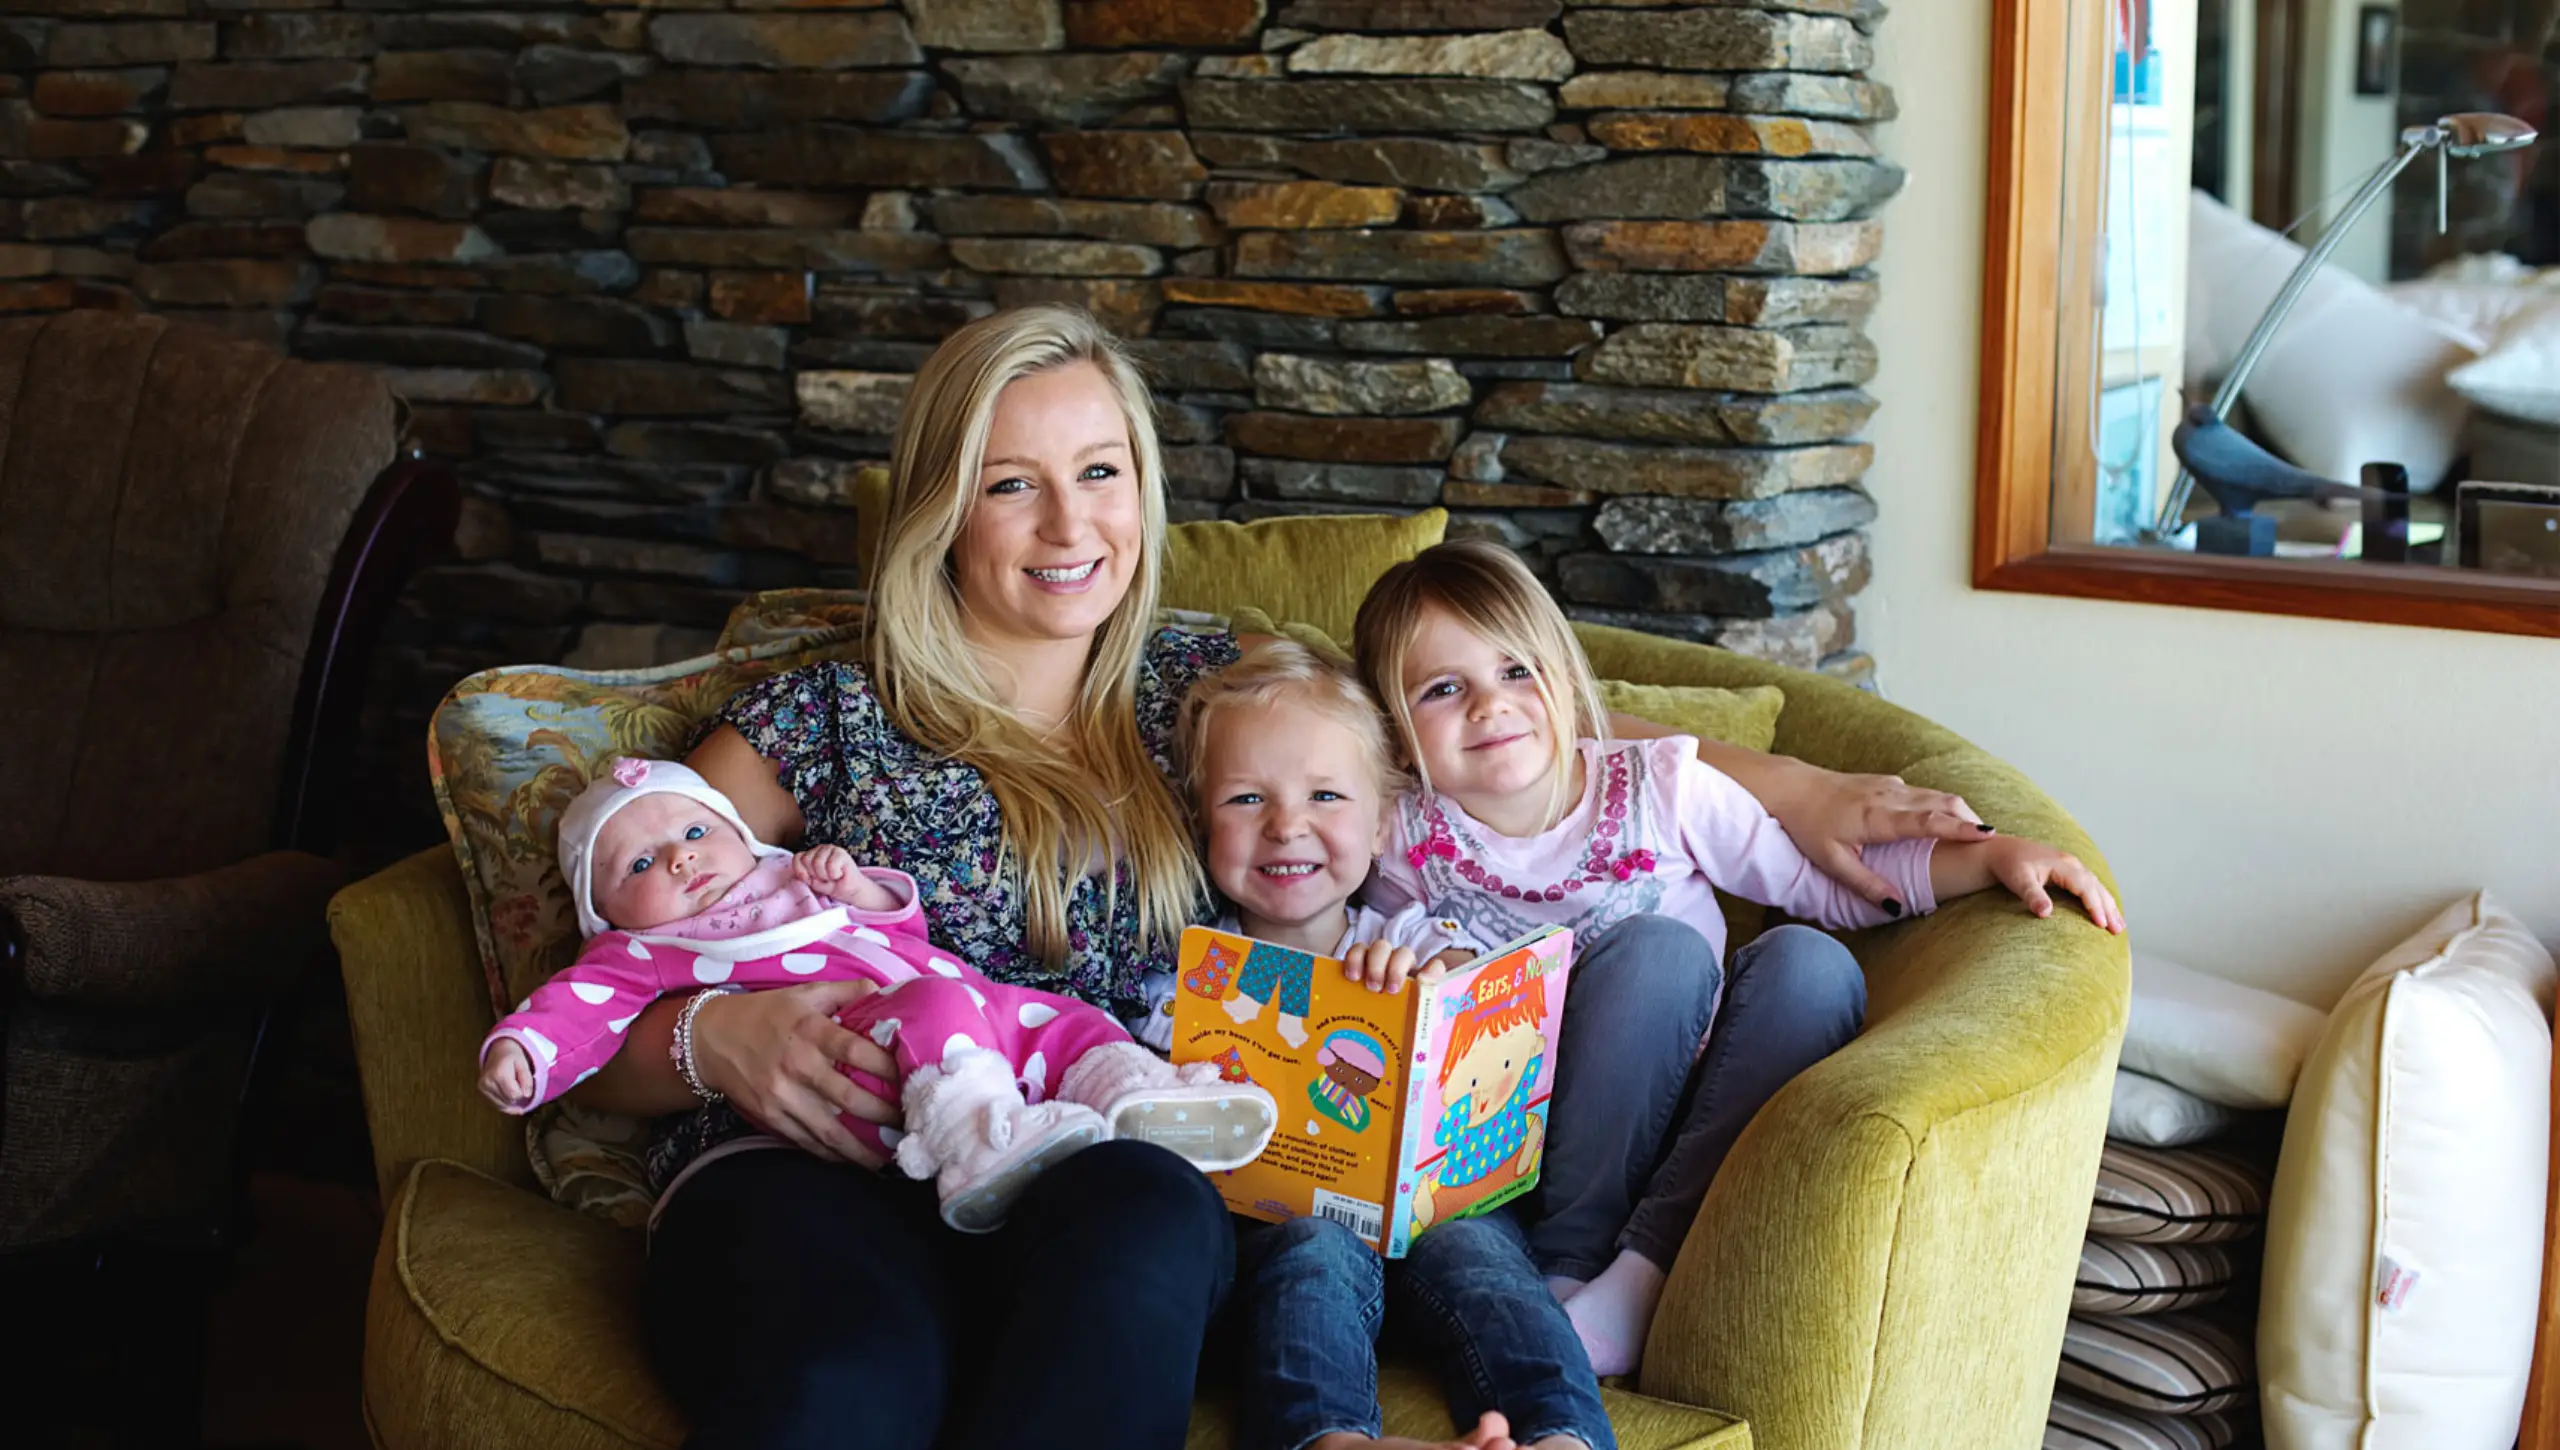 Junge blonde Frau sitzt auf einem Sofastuhl und hält ein Baby und zwei Kleinkinder